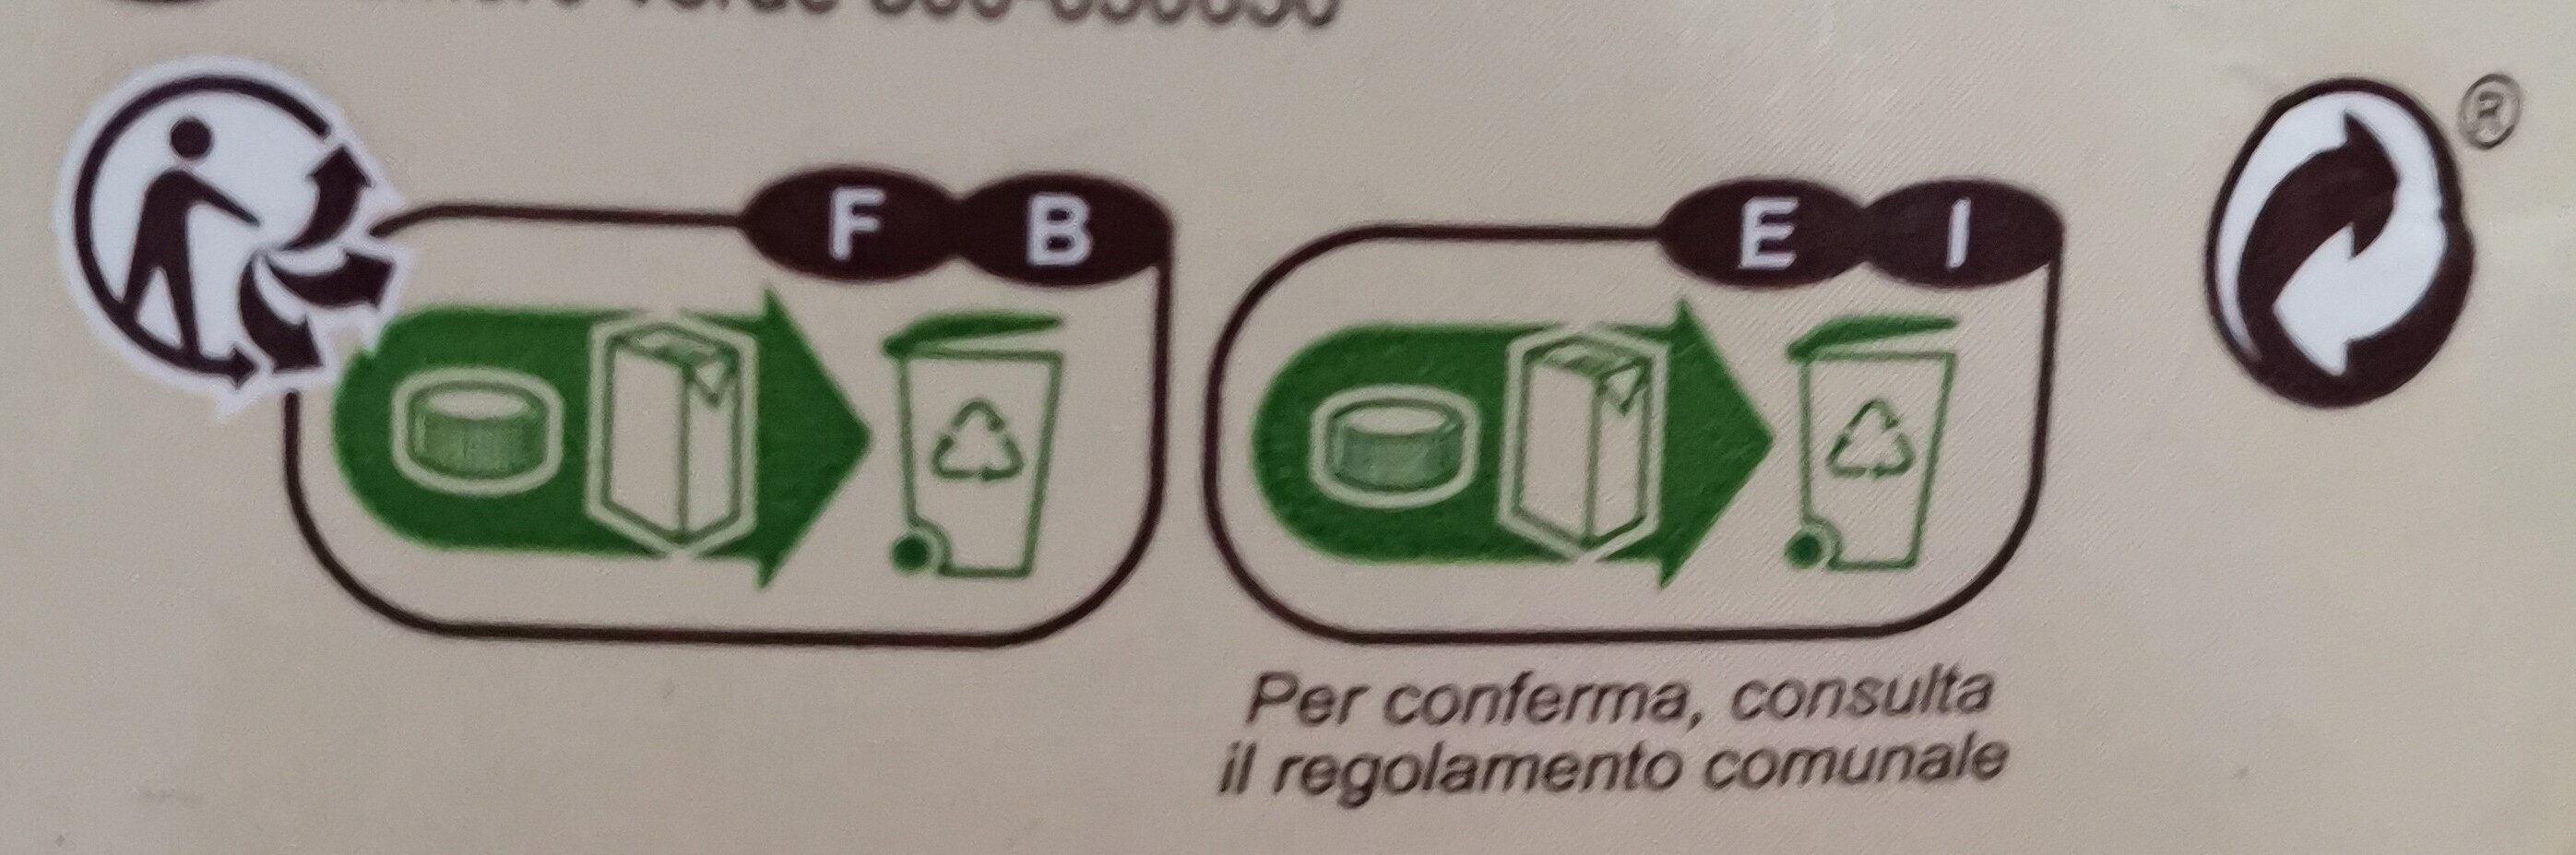 Jus de pamplemousse rose - Instruction de recyclage et/ou informations d'emballage - fr